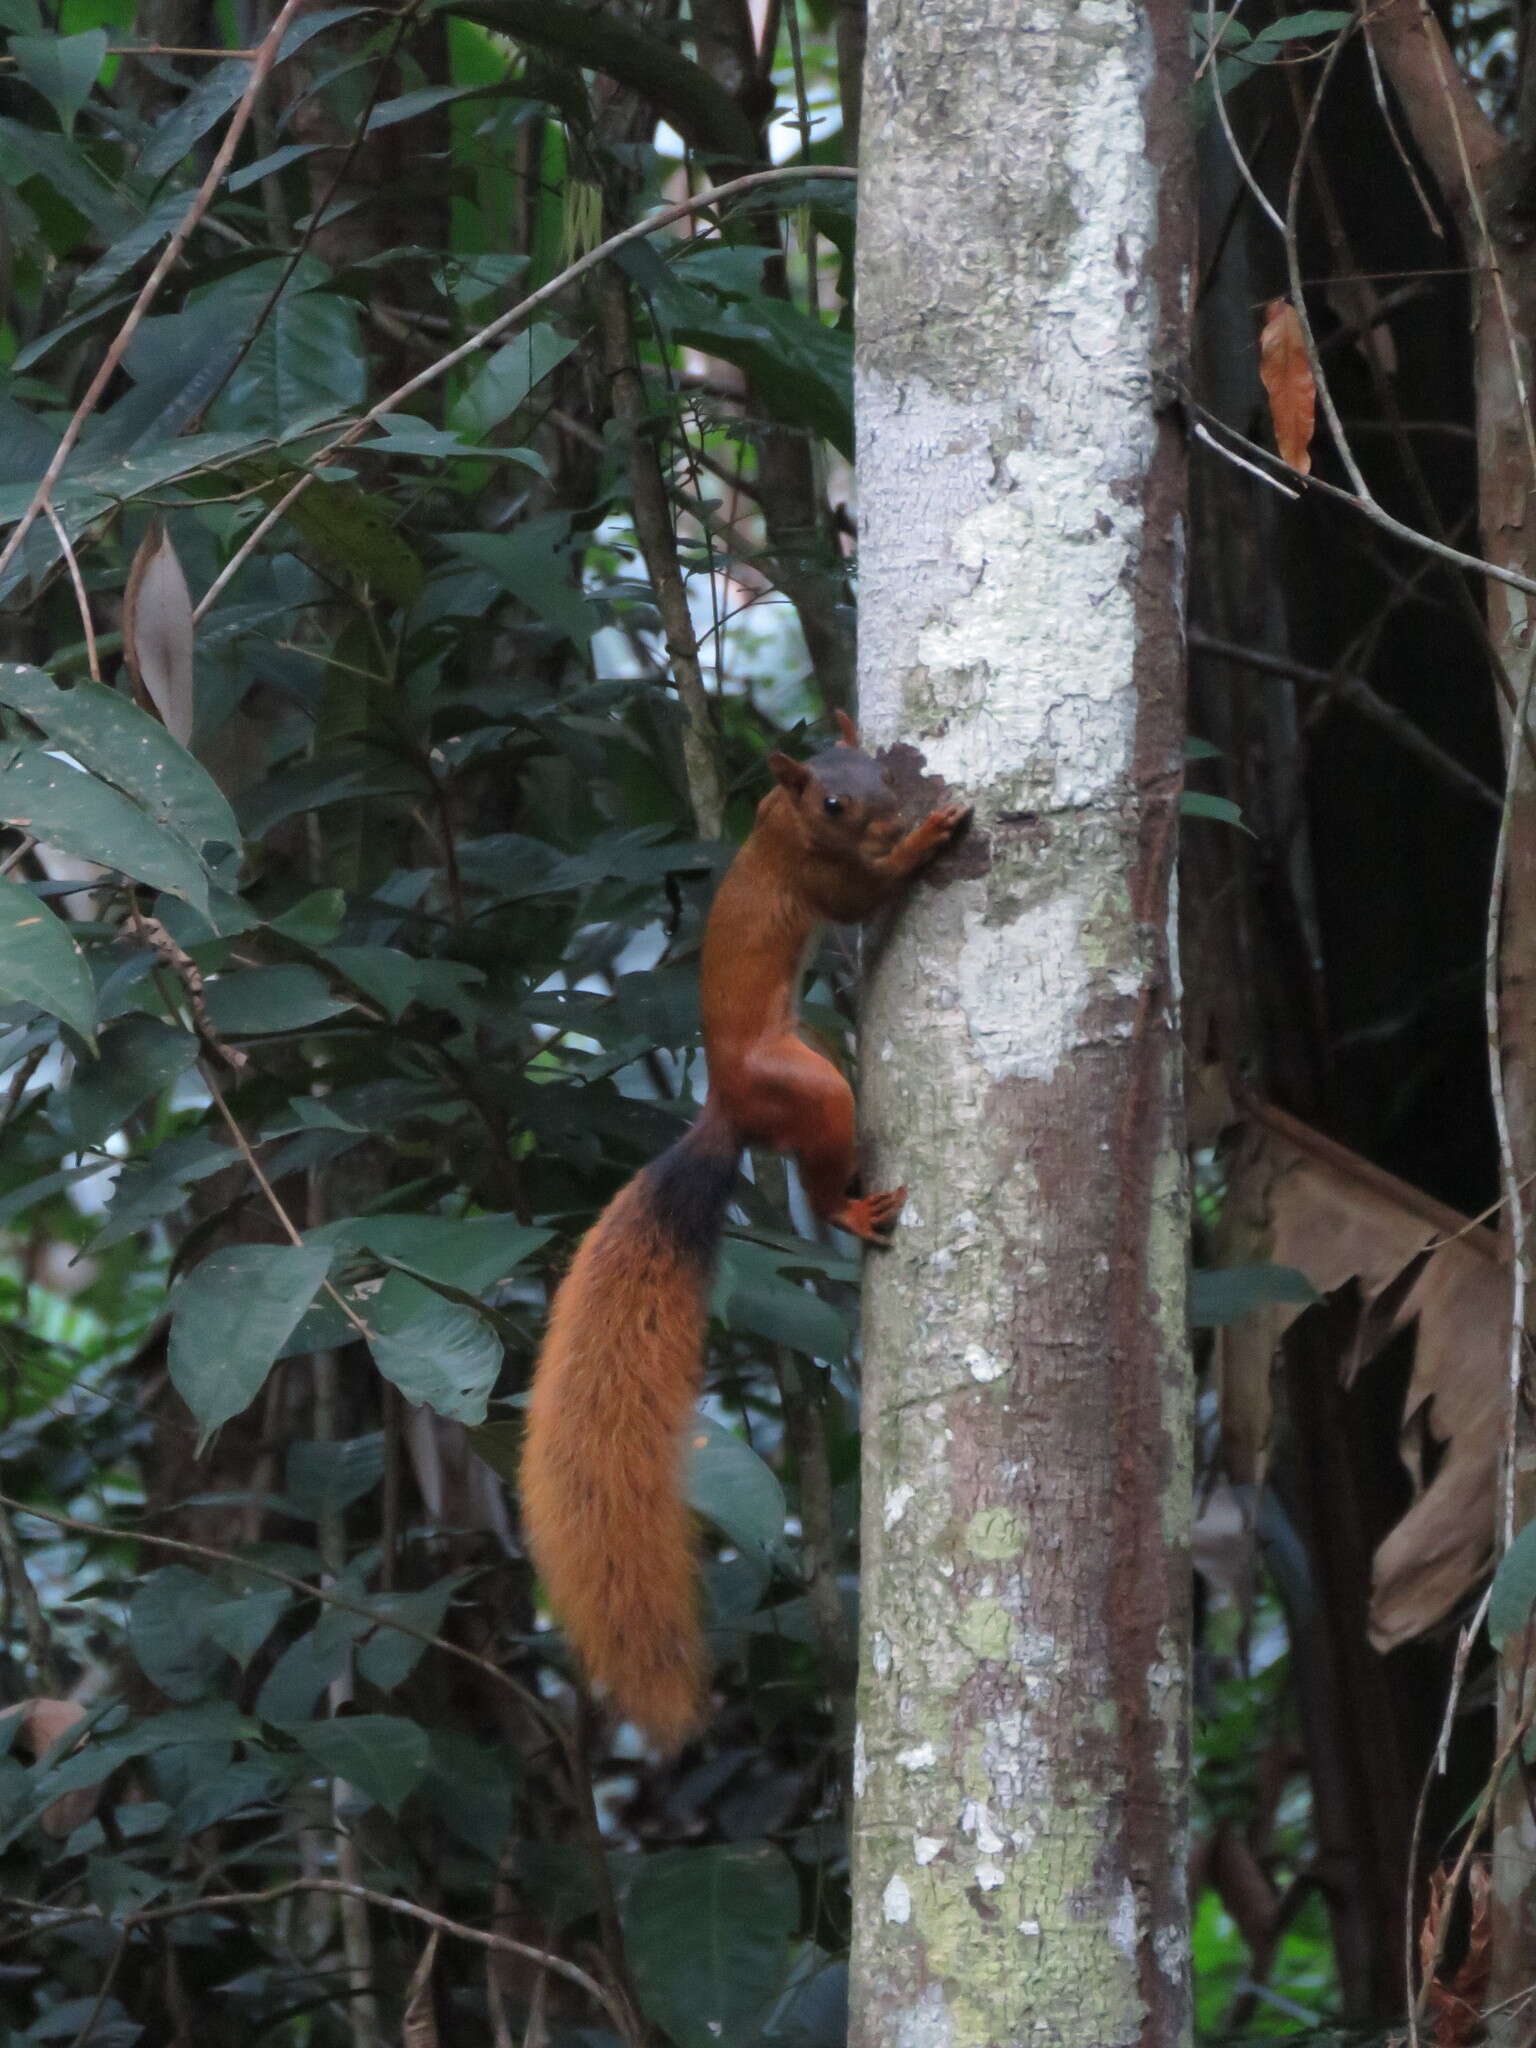 Image de écureuil roux du sud de l'Amazonie